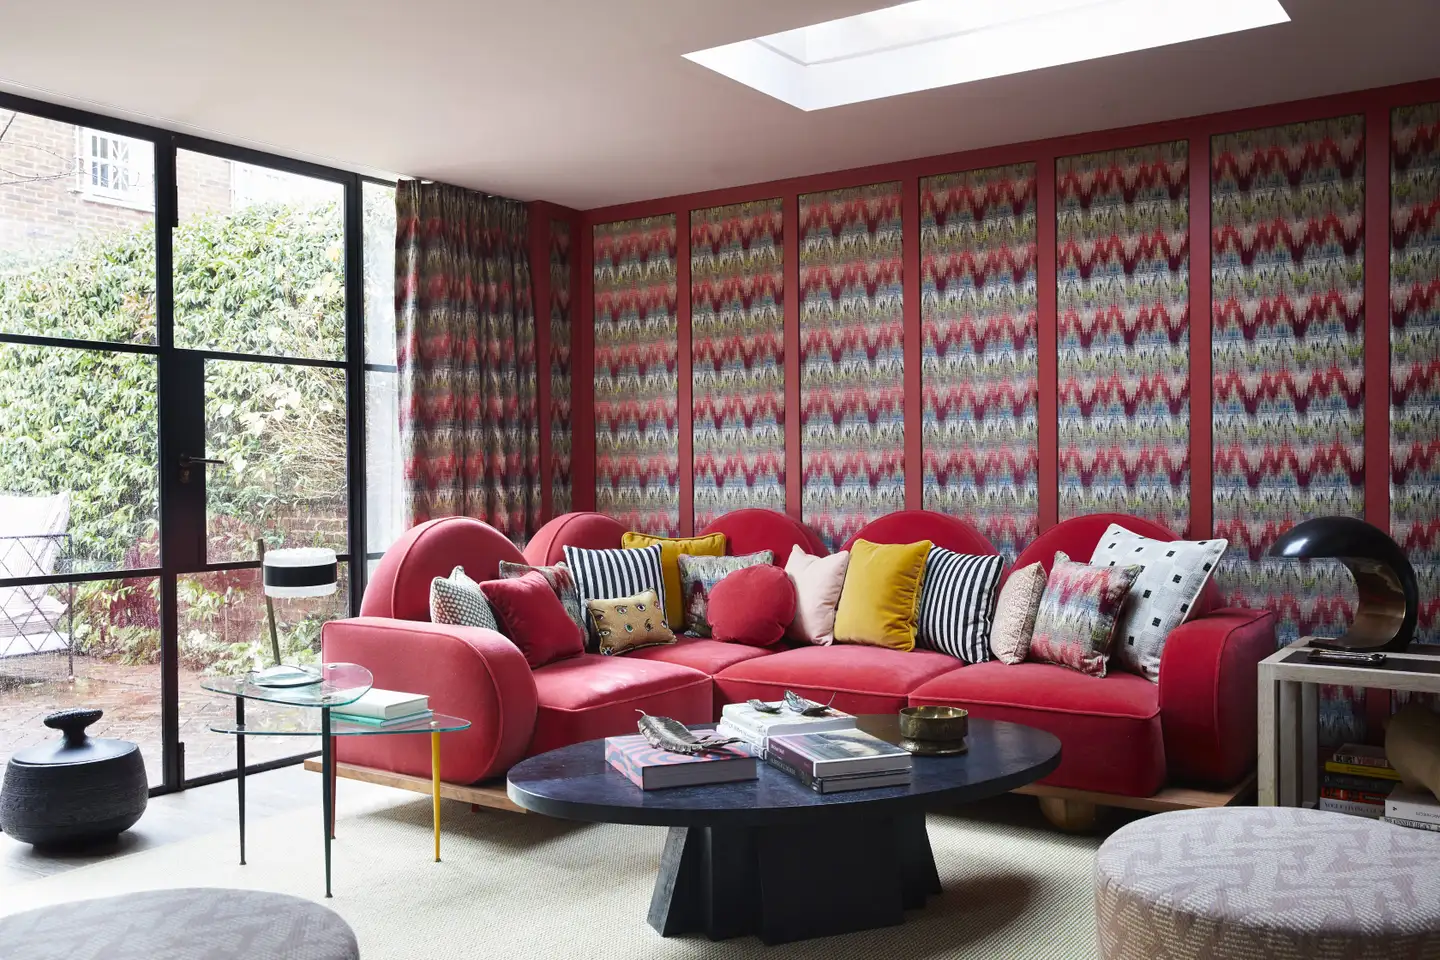 Eclectic living room in magenta tones